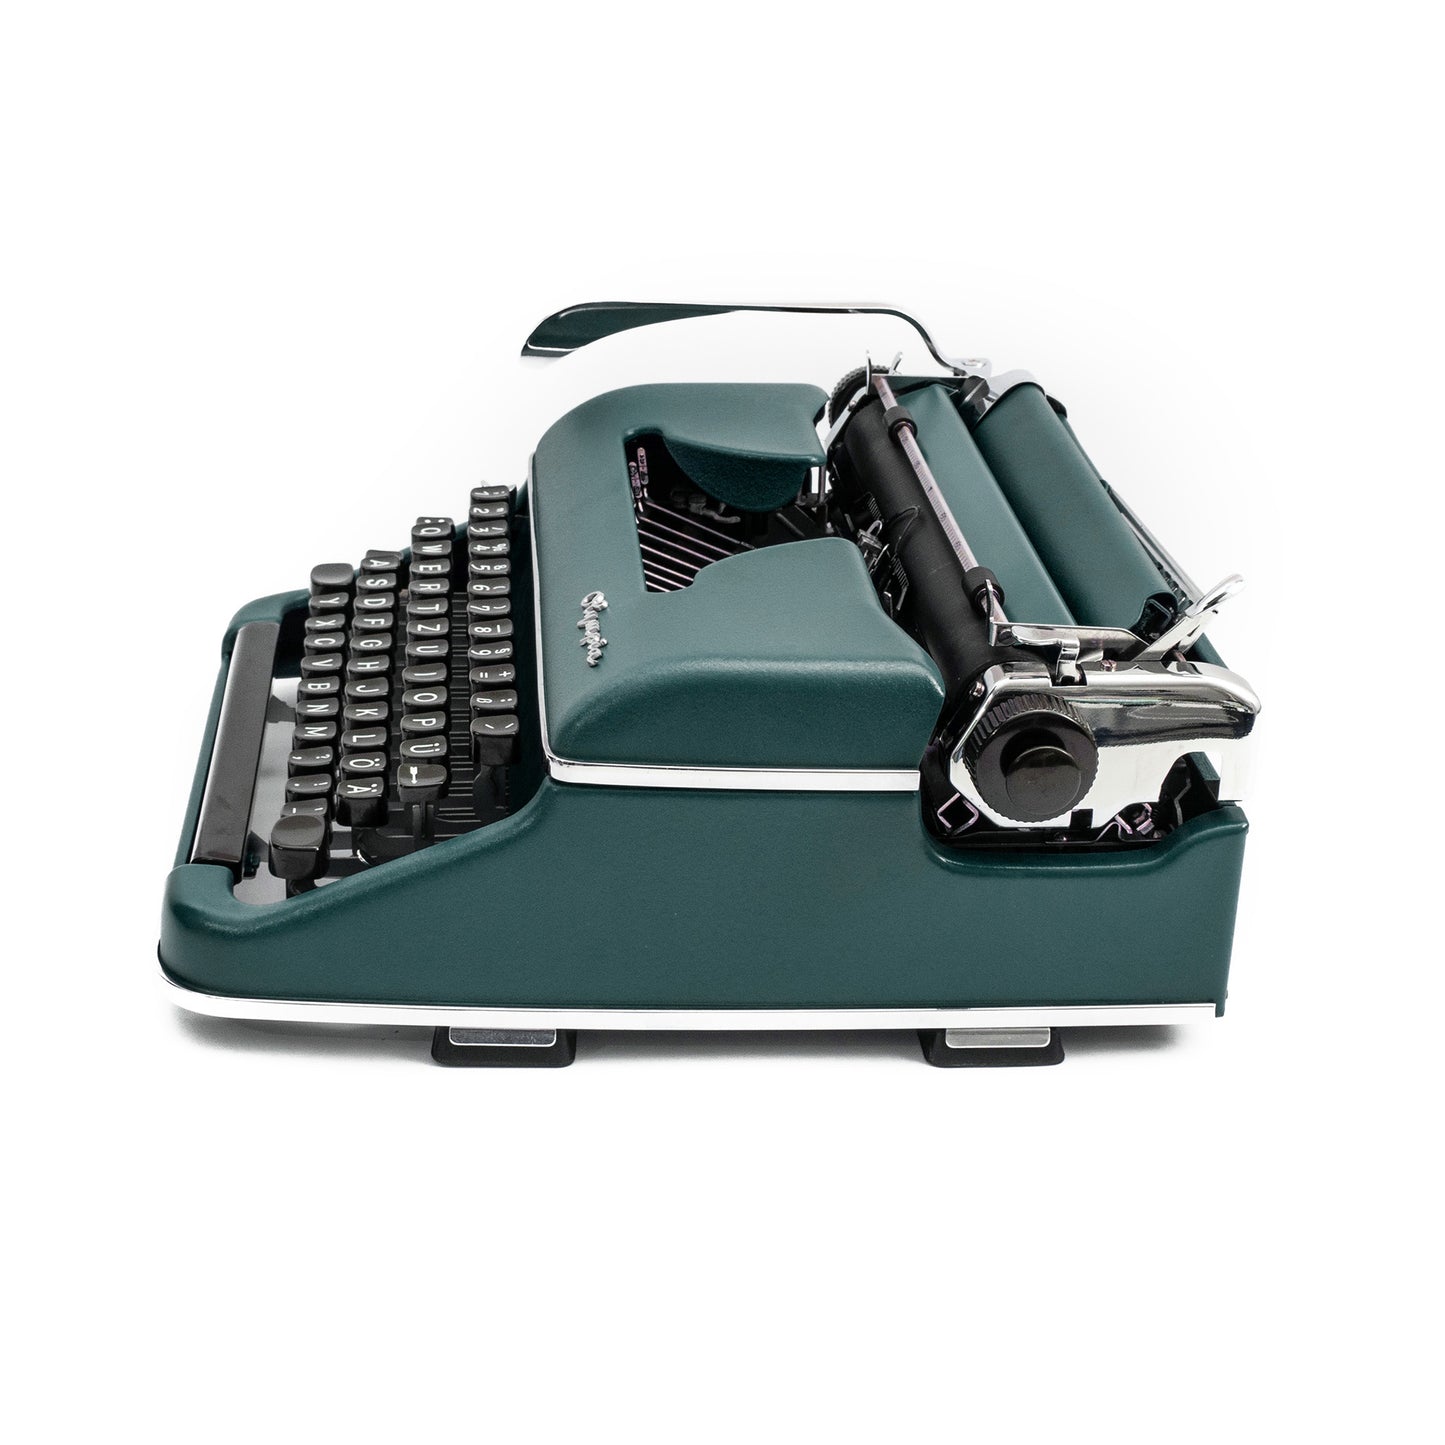 Olympia Schreibmaschine Dunkelgrün